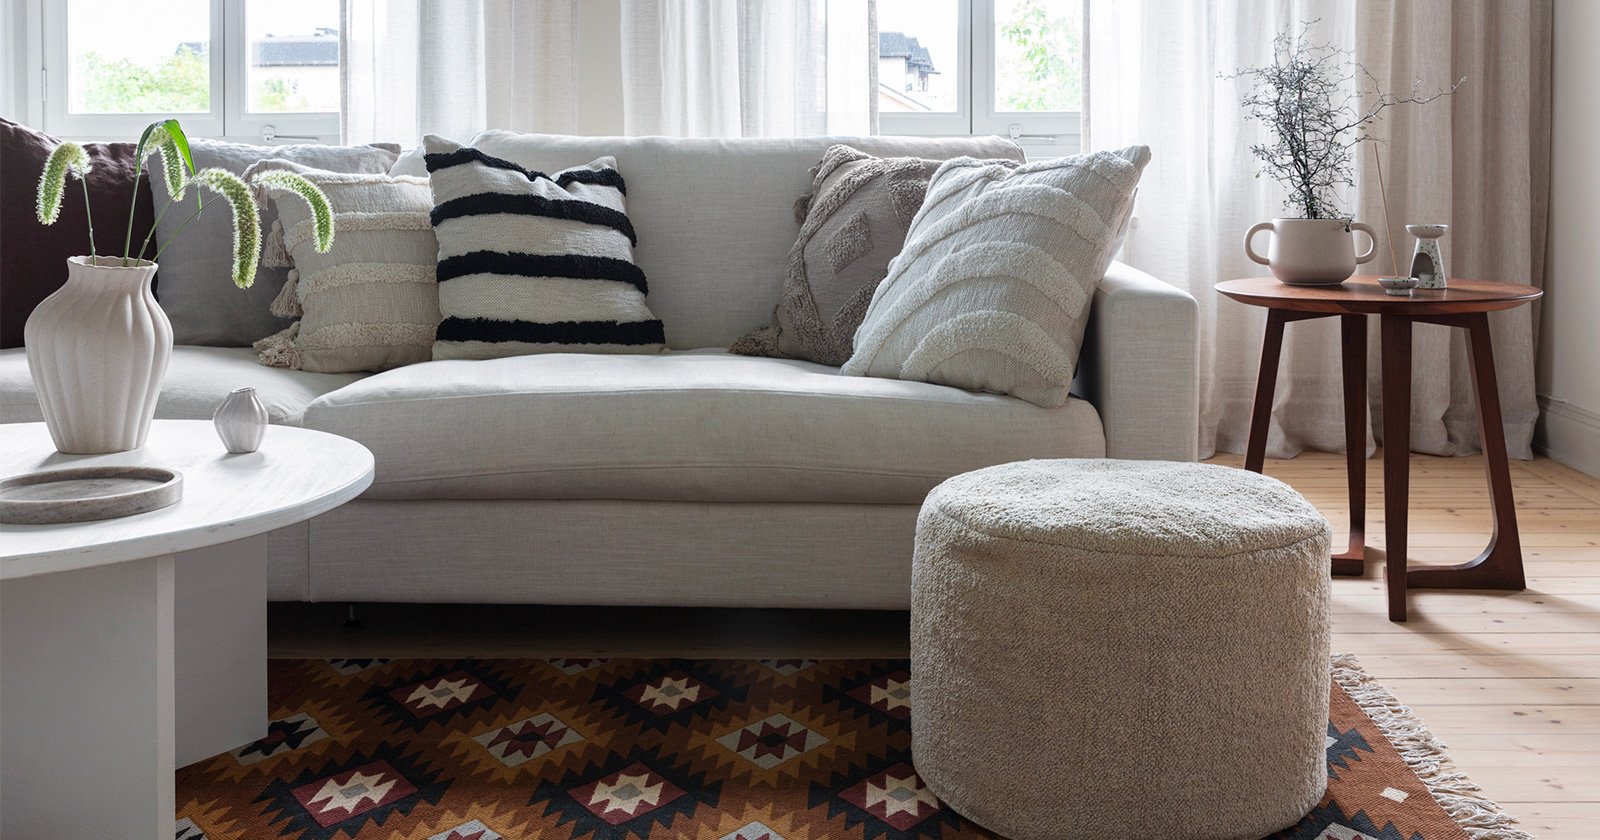 Ett vardagsrum med en vit soffa som står på en mönstrad, handvävd matta. På mattan står en vit sittpuff samt ett vitt bord med vaser på